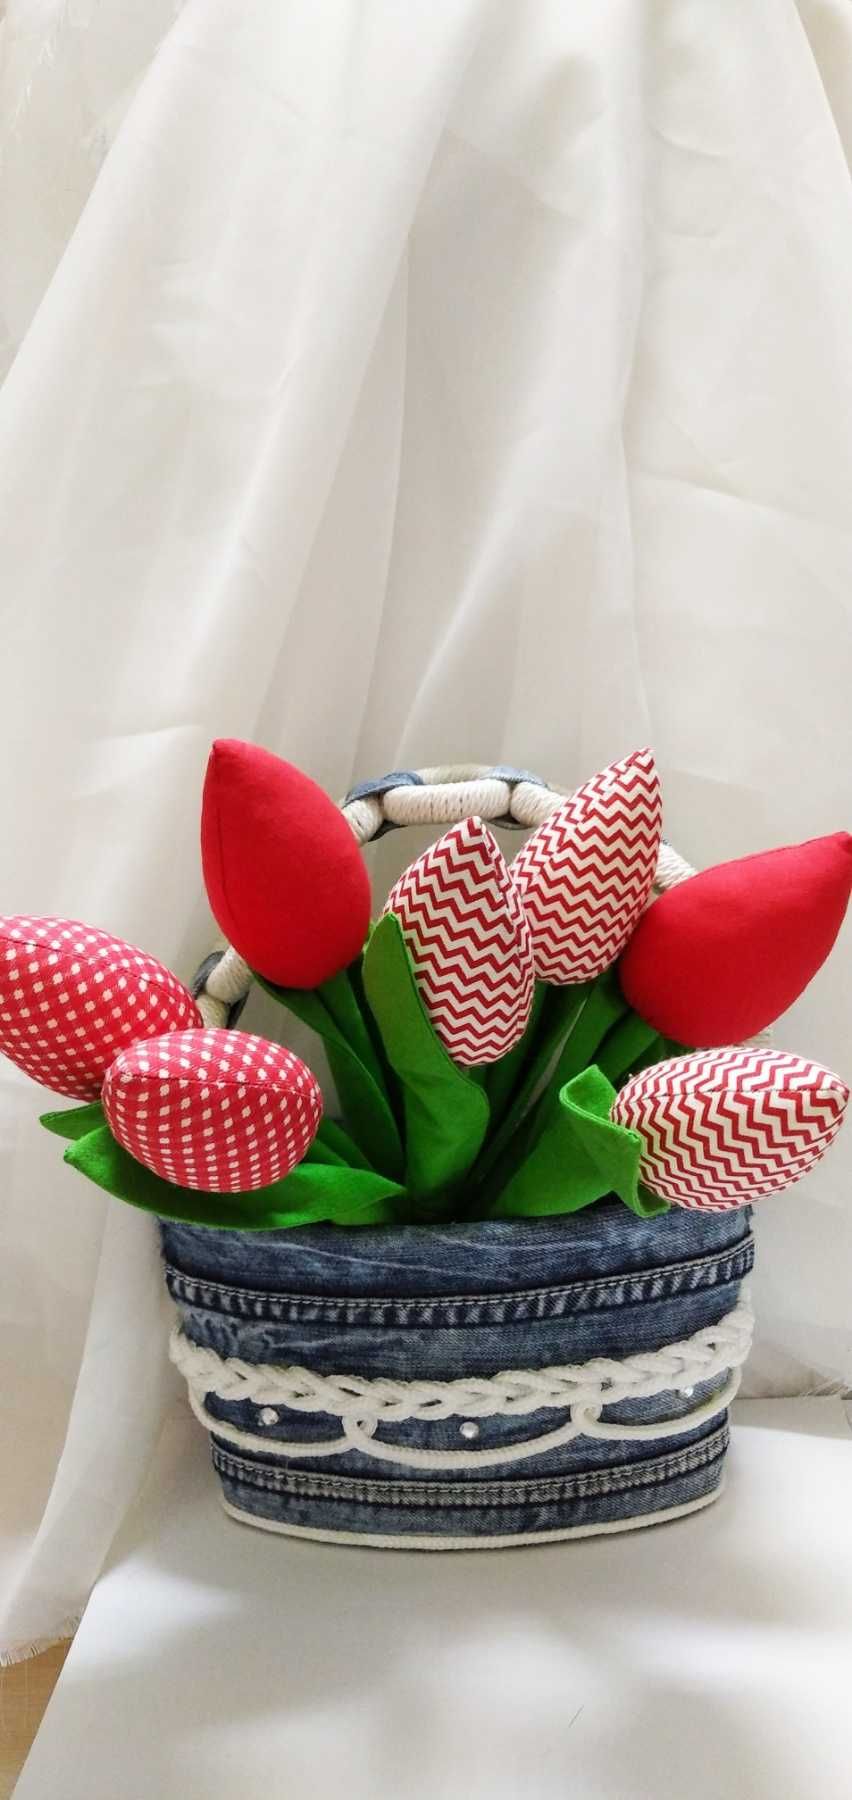 Букет цветов из тюльпанов (текстильные), ручная работа